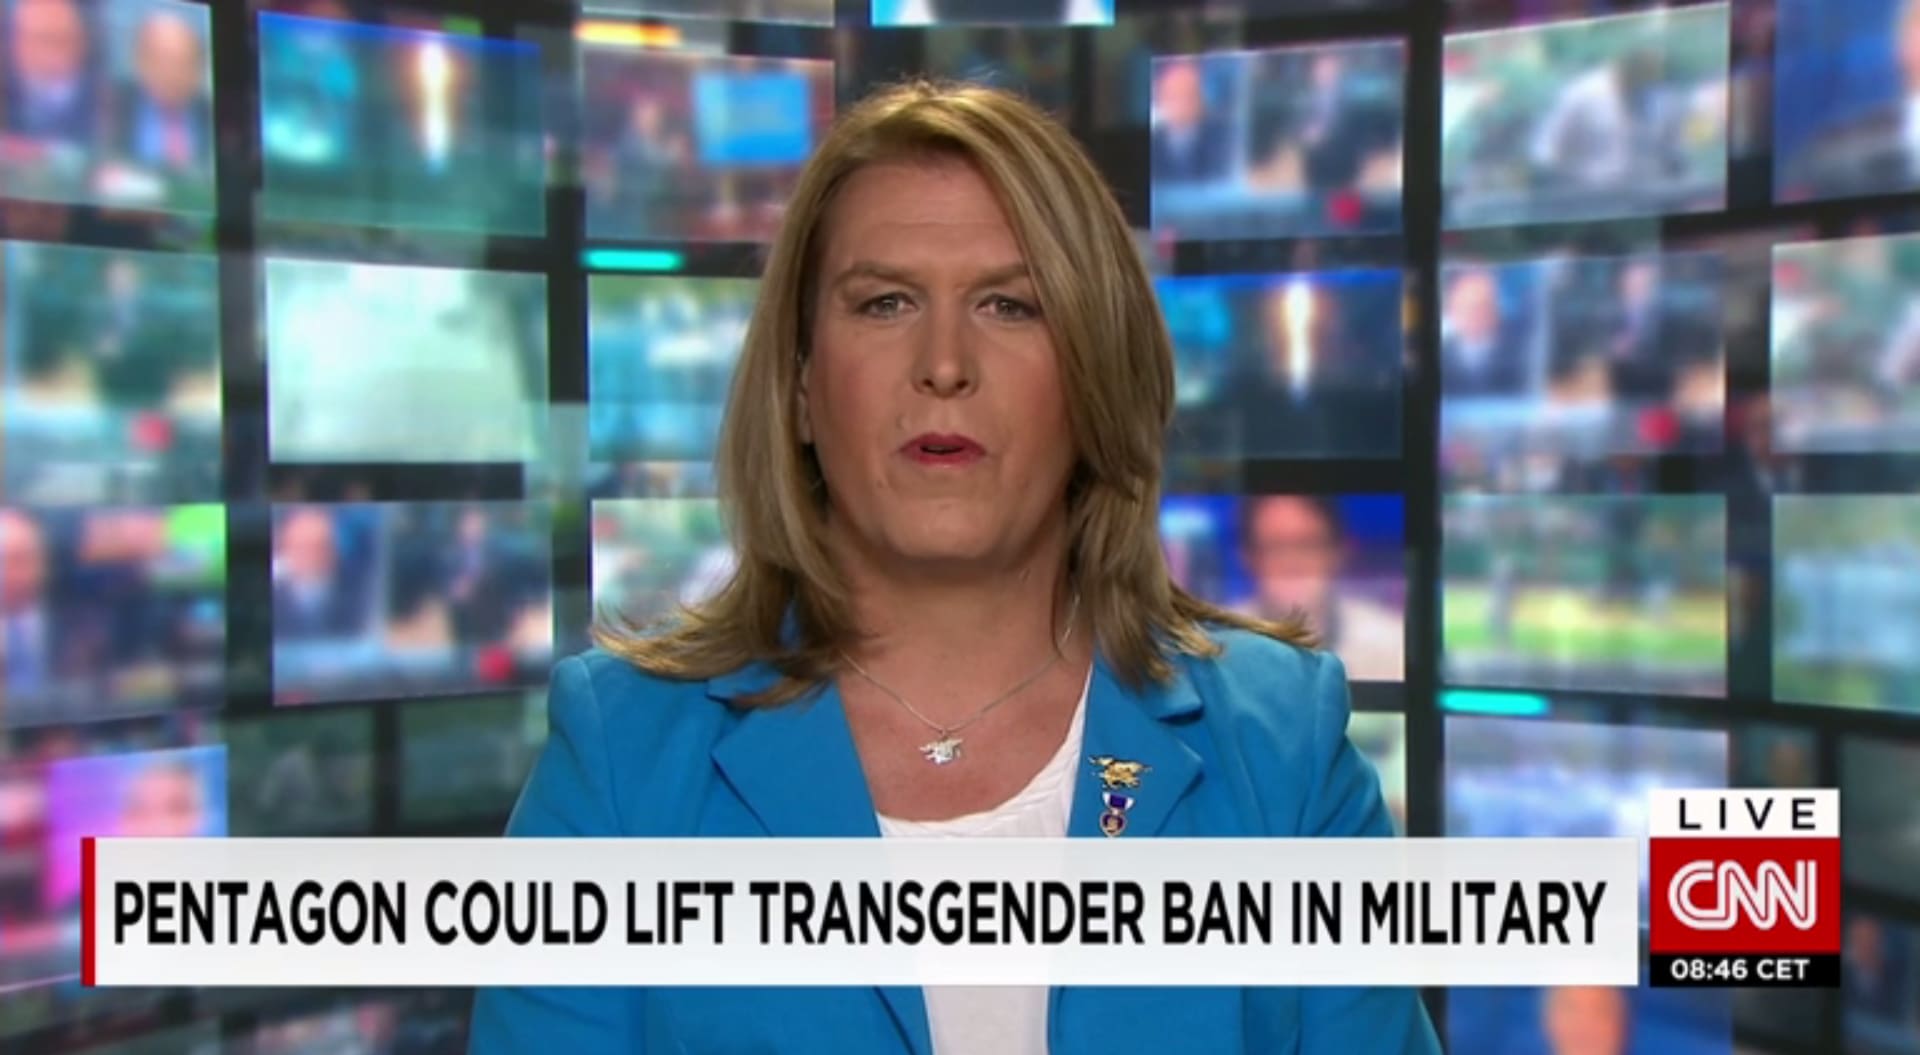 قرار "شبه نهائي" بالسماح للمتحولين جنسيا بالخدمة في الجيش الأمريكي